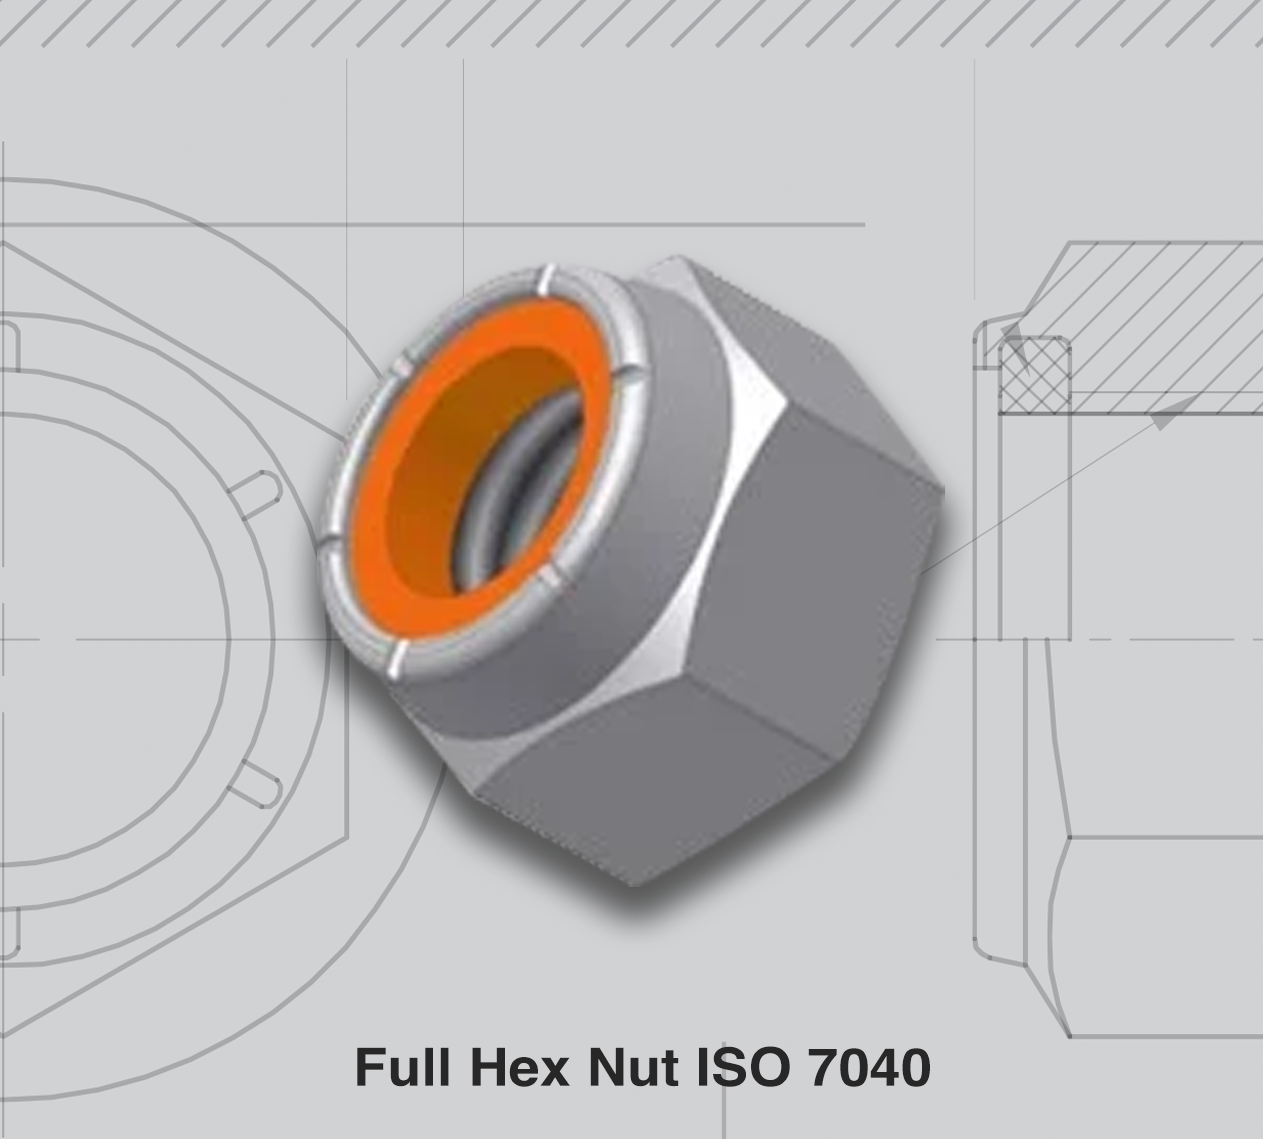 Full Hex Nut ISO 7040